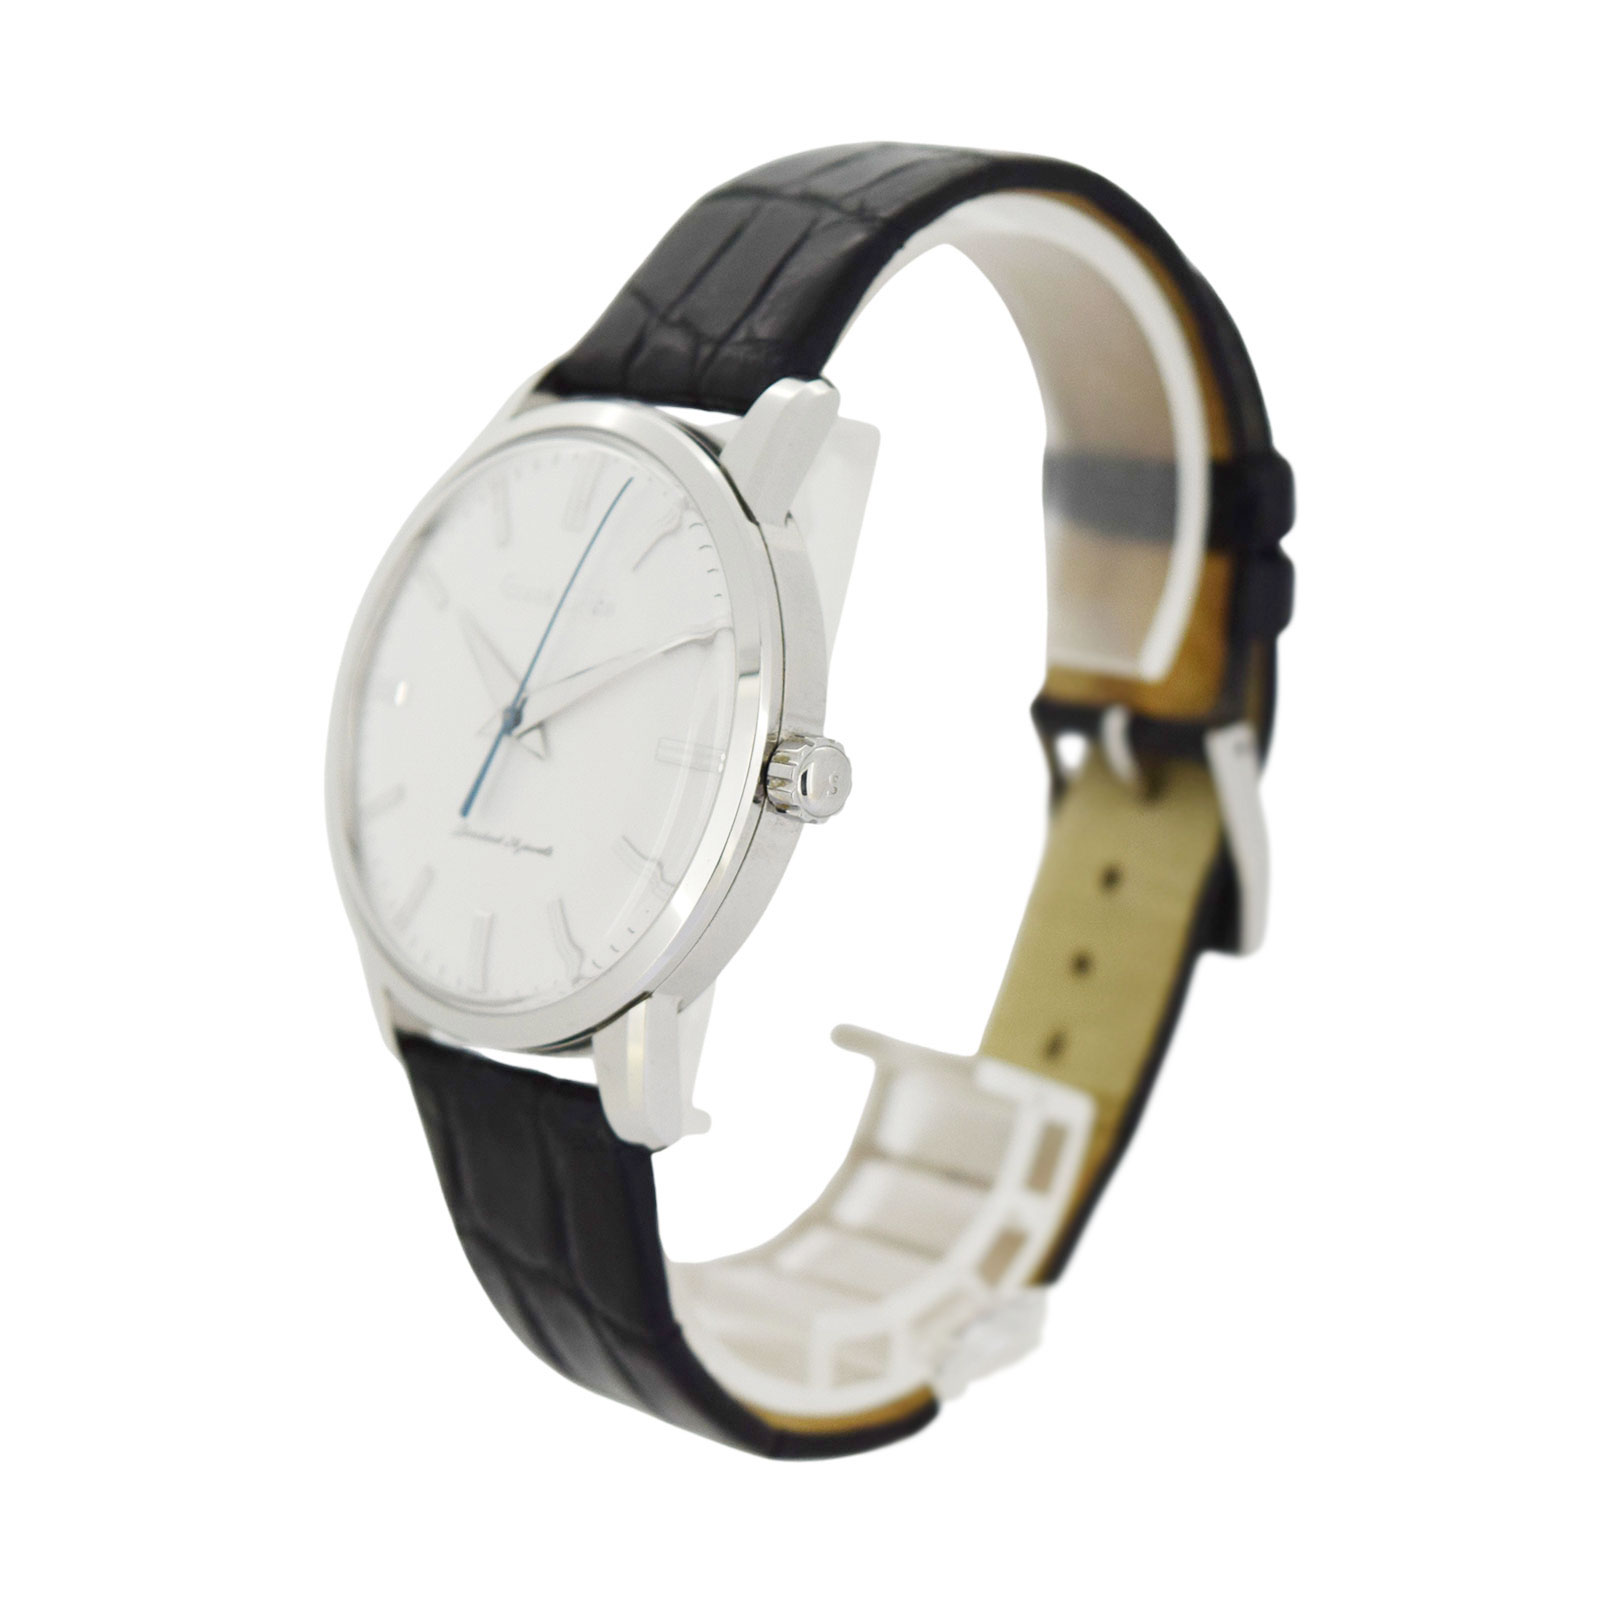 世界1960本限定 初代GS復刻モデル SEIKO セイコー  グランドセイコー  SBGW253 9S64-00M0  メンズ 腕時計